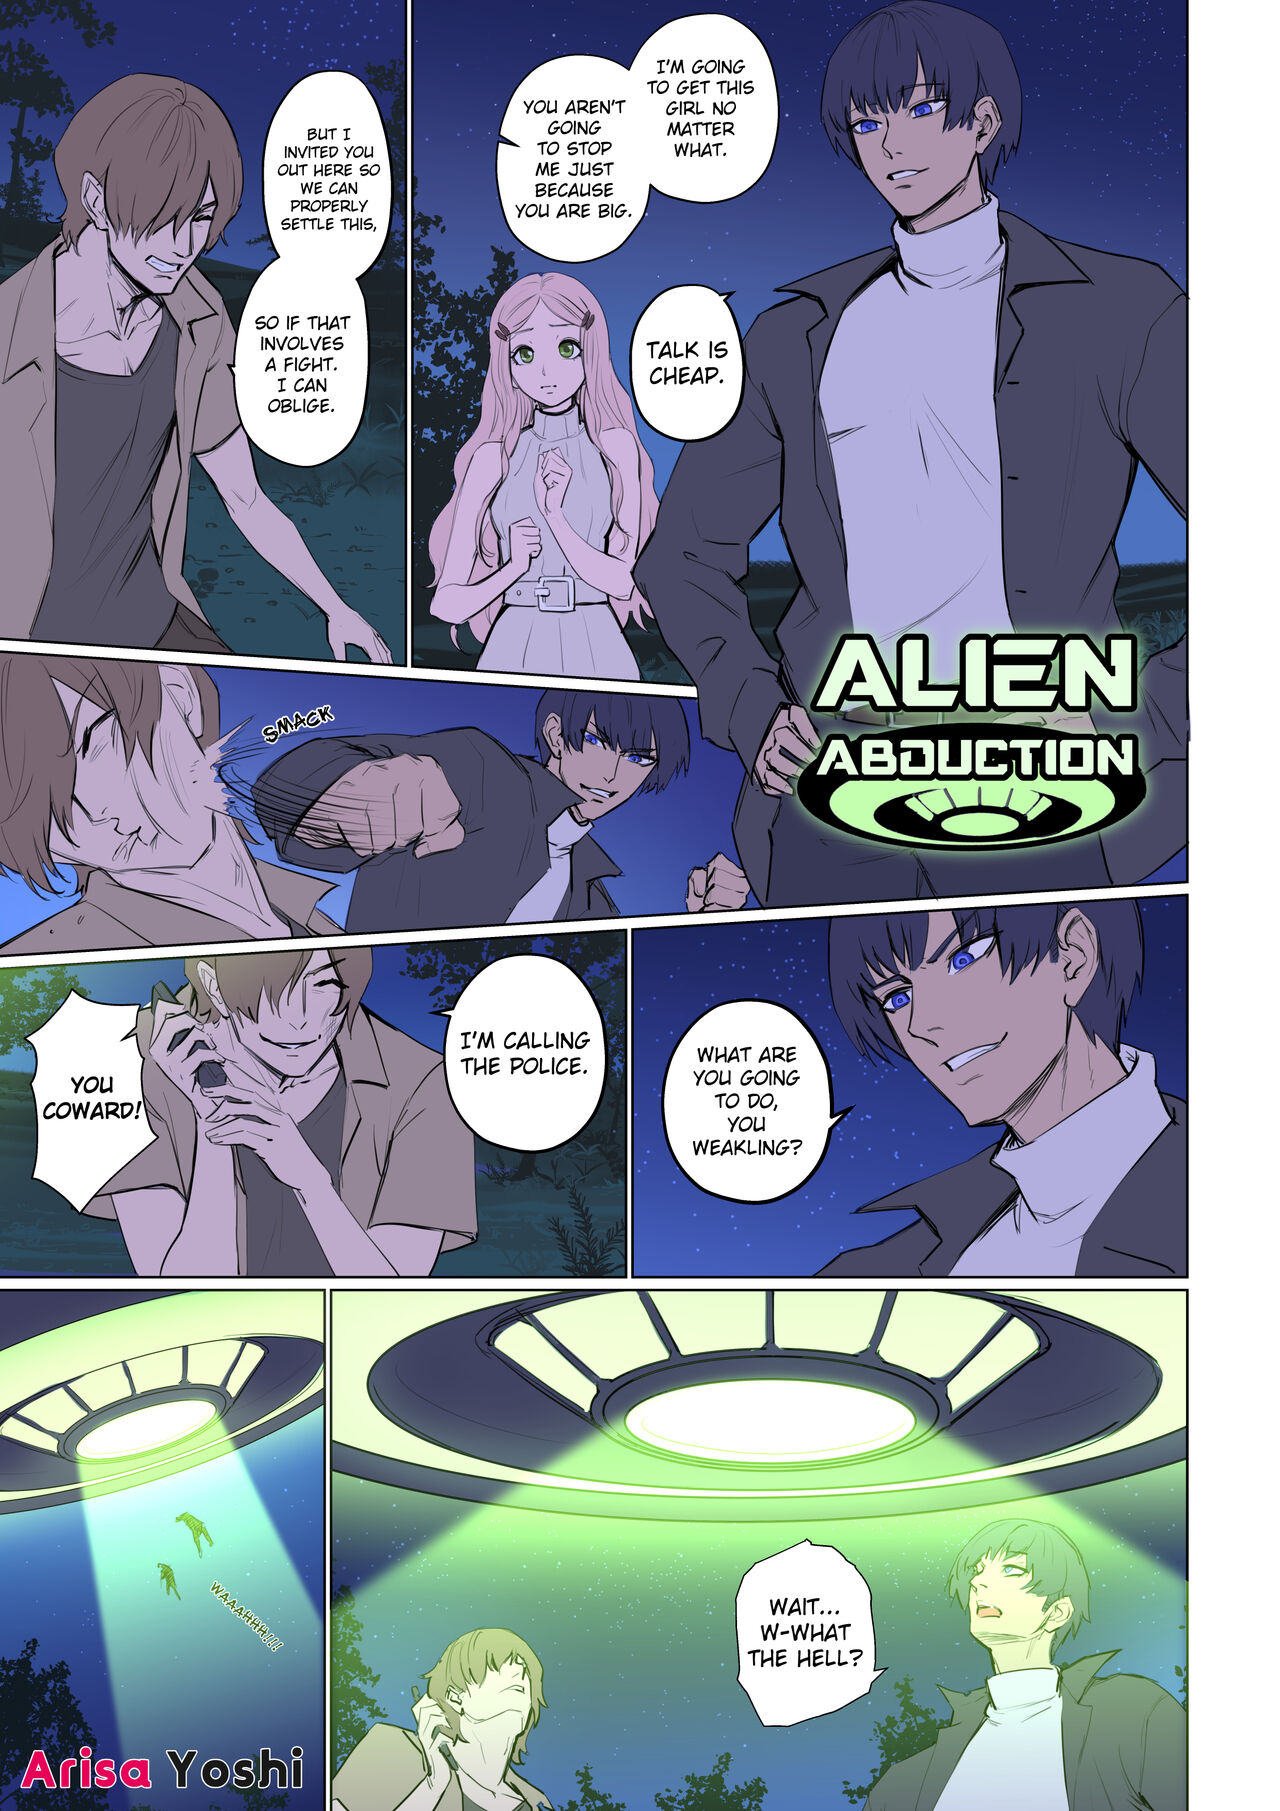 1280px x 1811px - Alien Abduction 1 [Arisane / Arisa Yoshi] - Porn Cartoon Comics